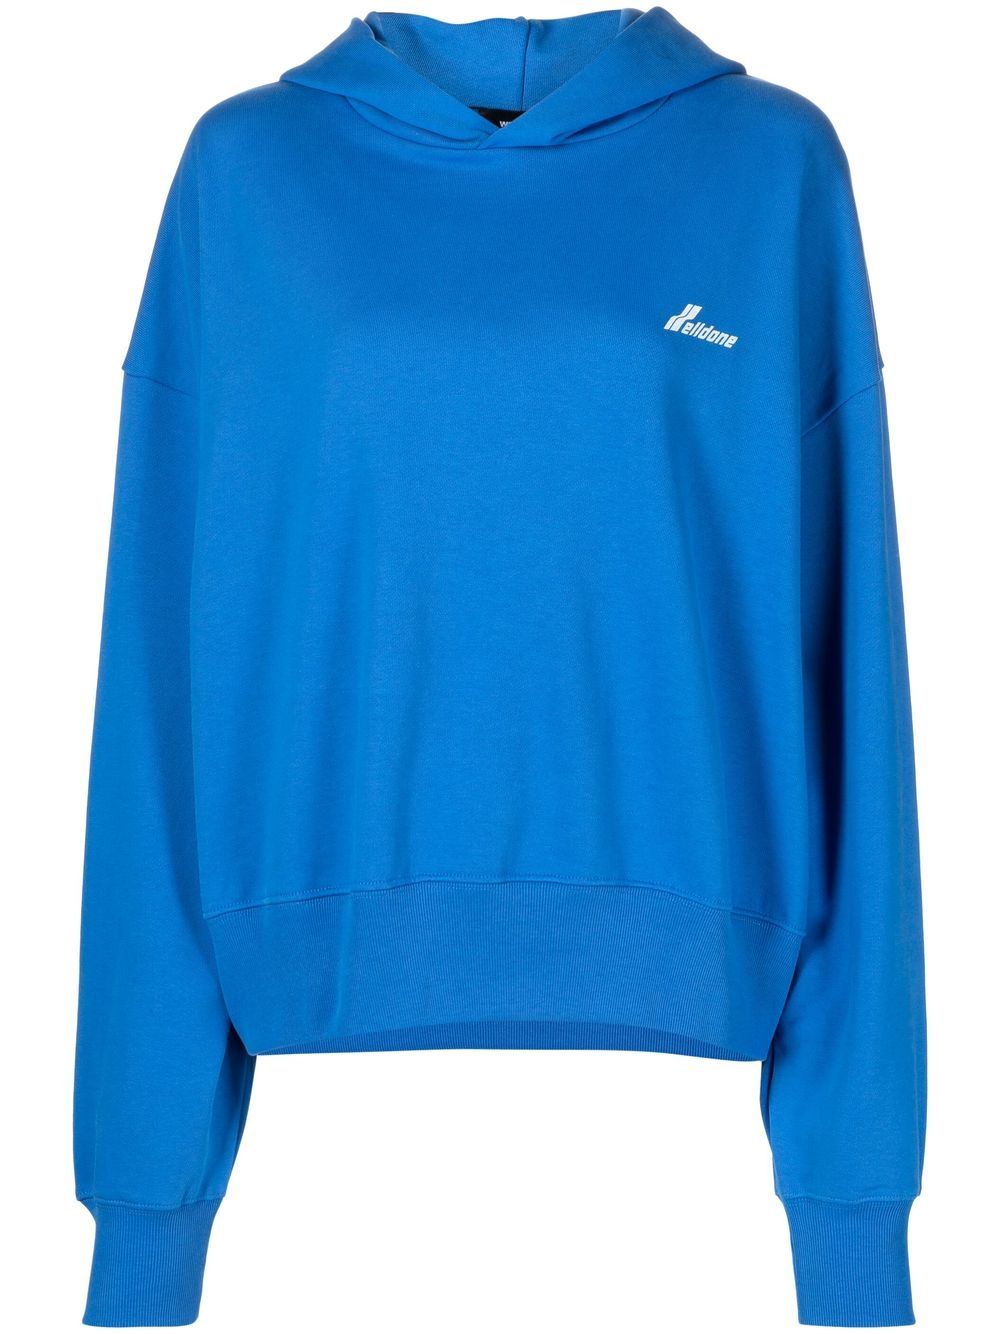 

We11done hoodie con logo estampado - Azul